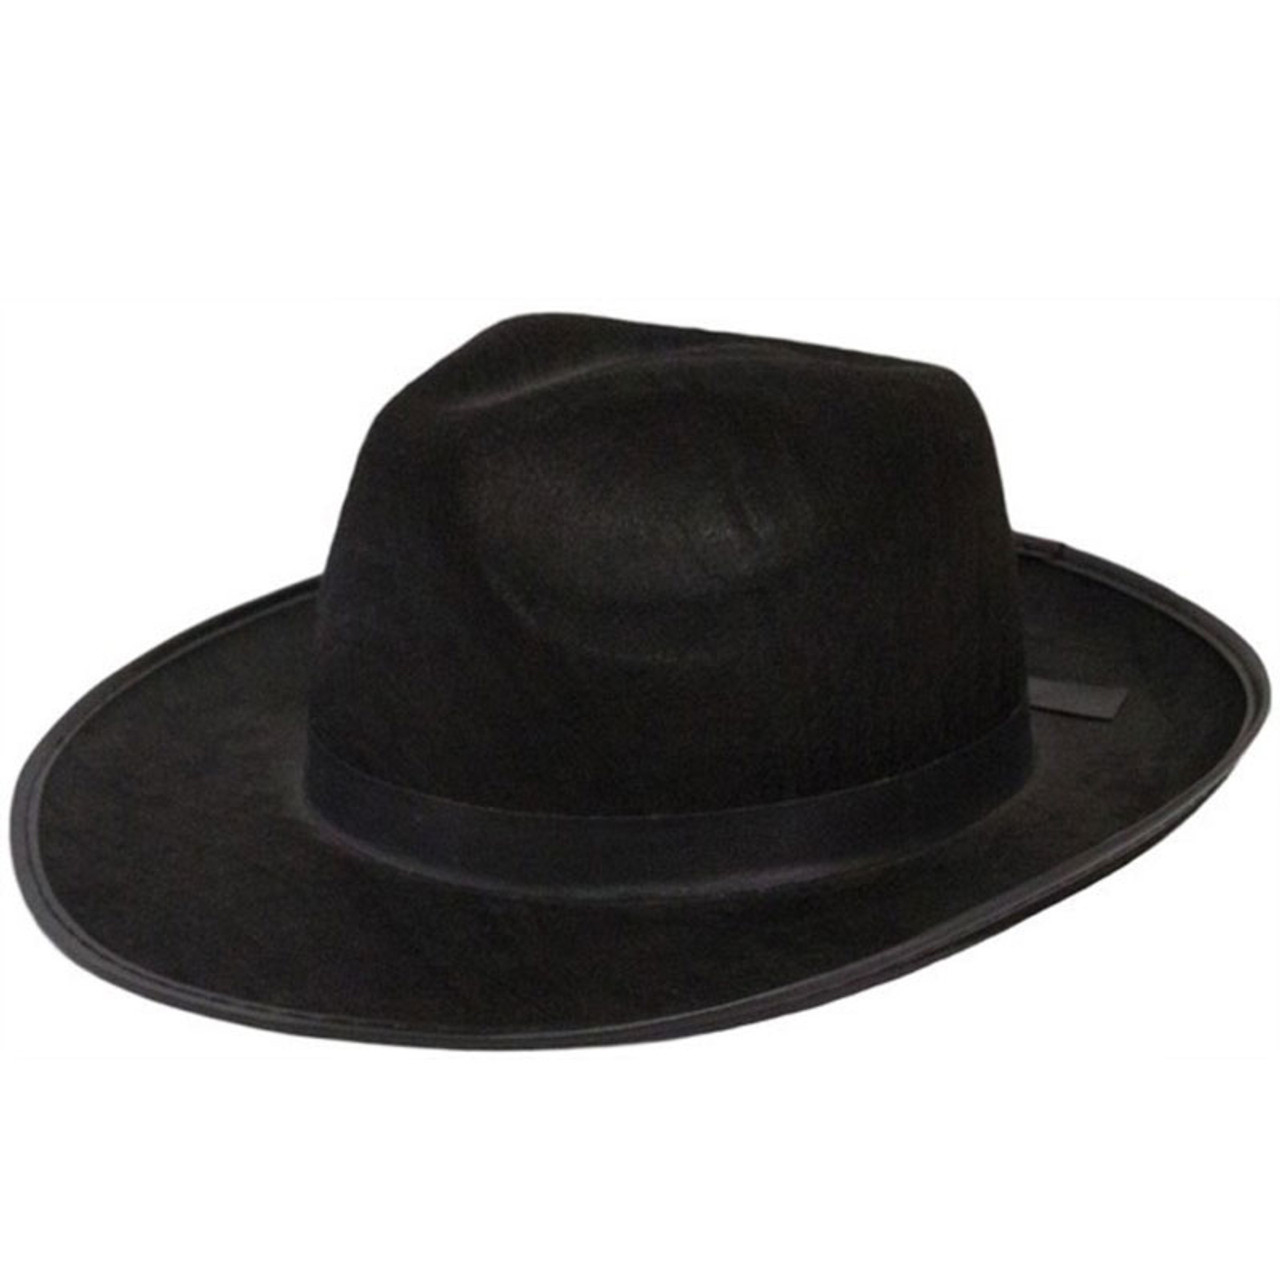 Mens Wide Brim Fedora Hats, Black Wide Brim Hat